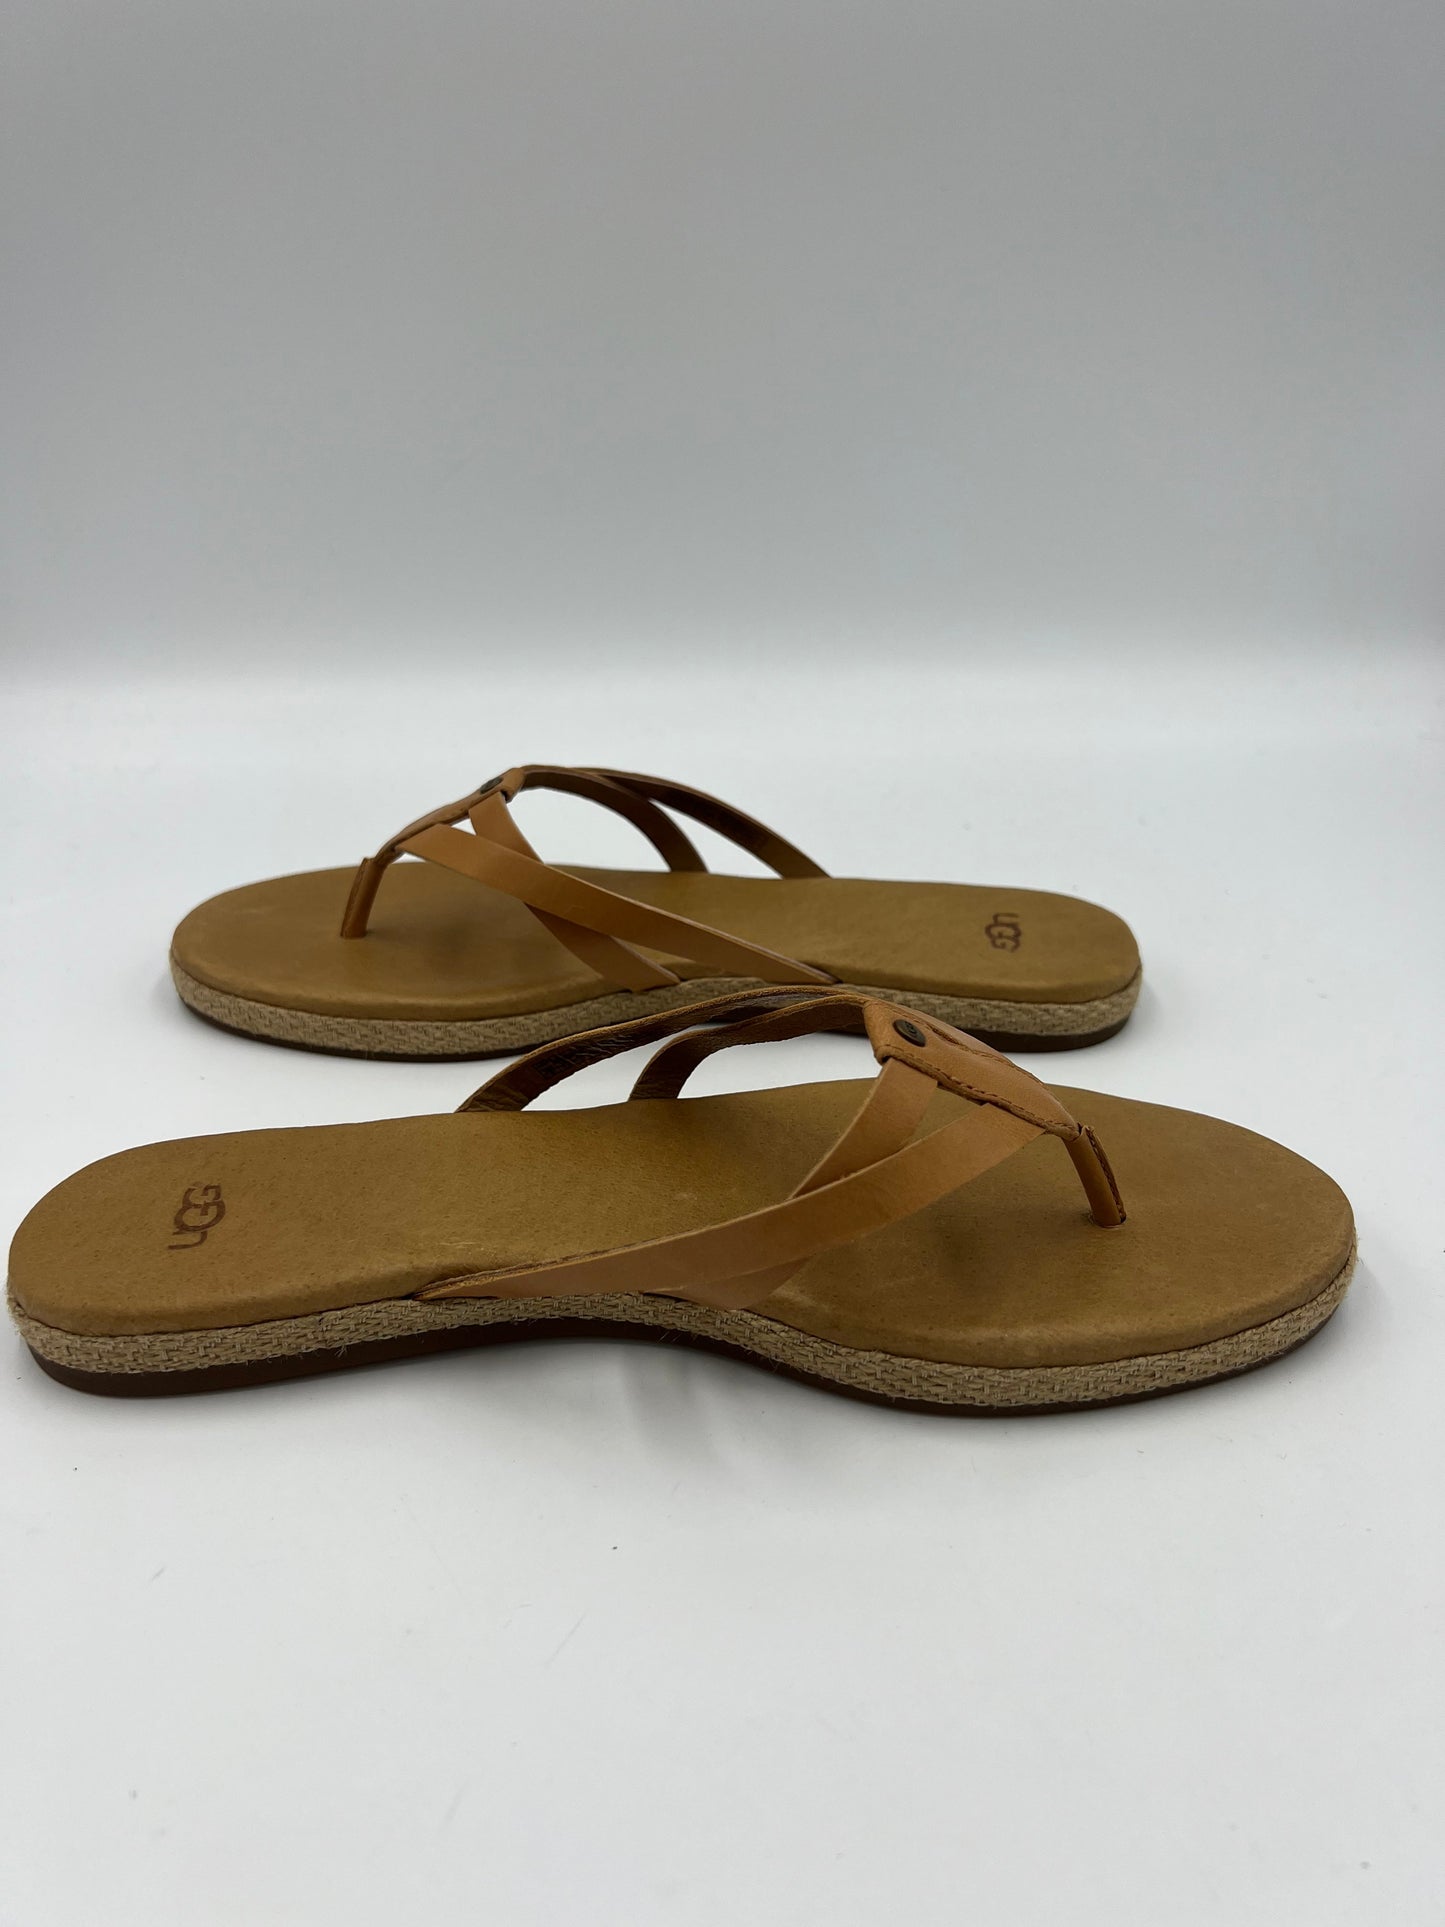 Like New! Brown Sandals Designer Ugg, Size 9